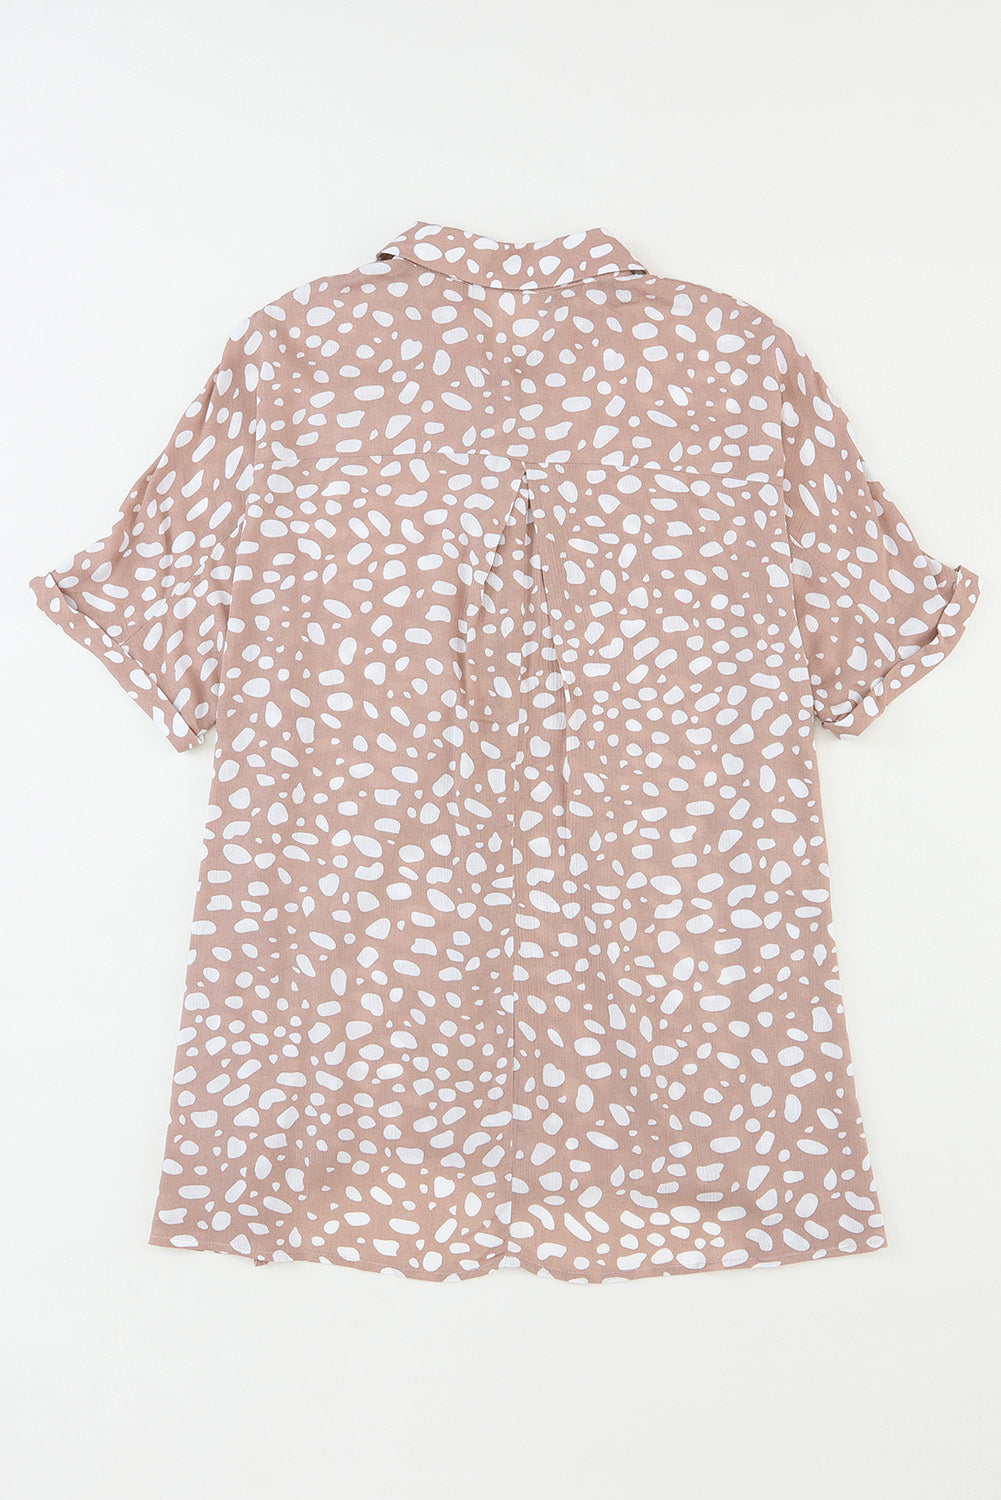 Rosafarbenes, kurzärmliges Twist-Hemd mit Leopardenmuster